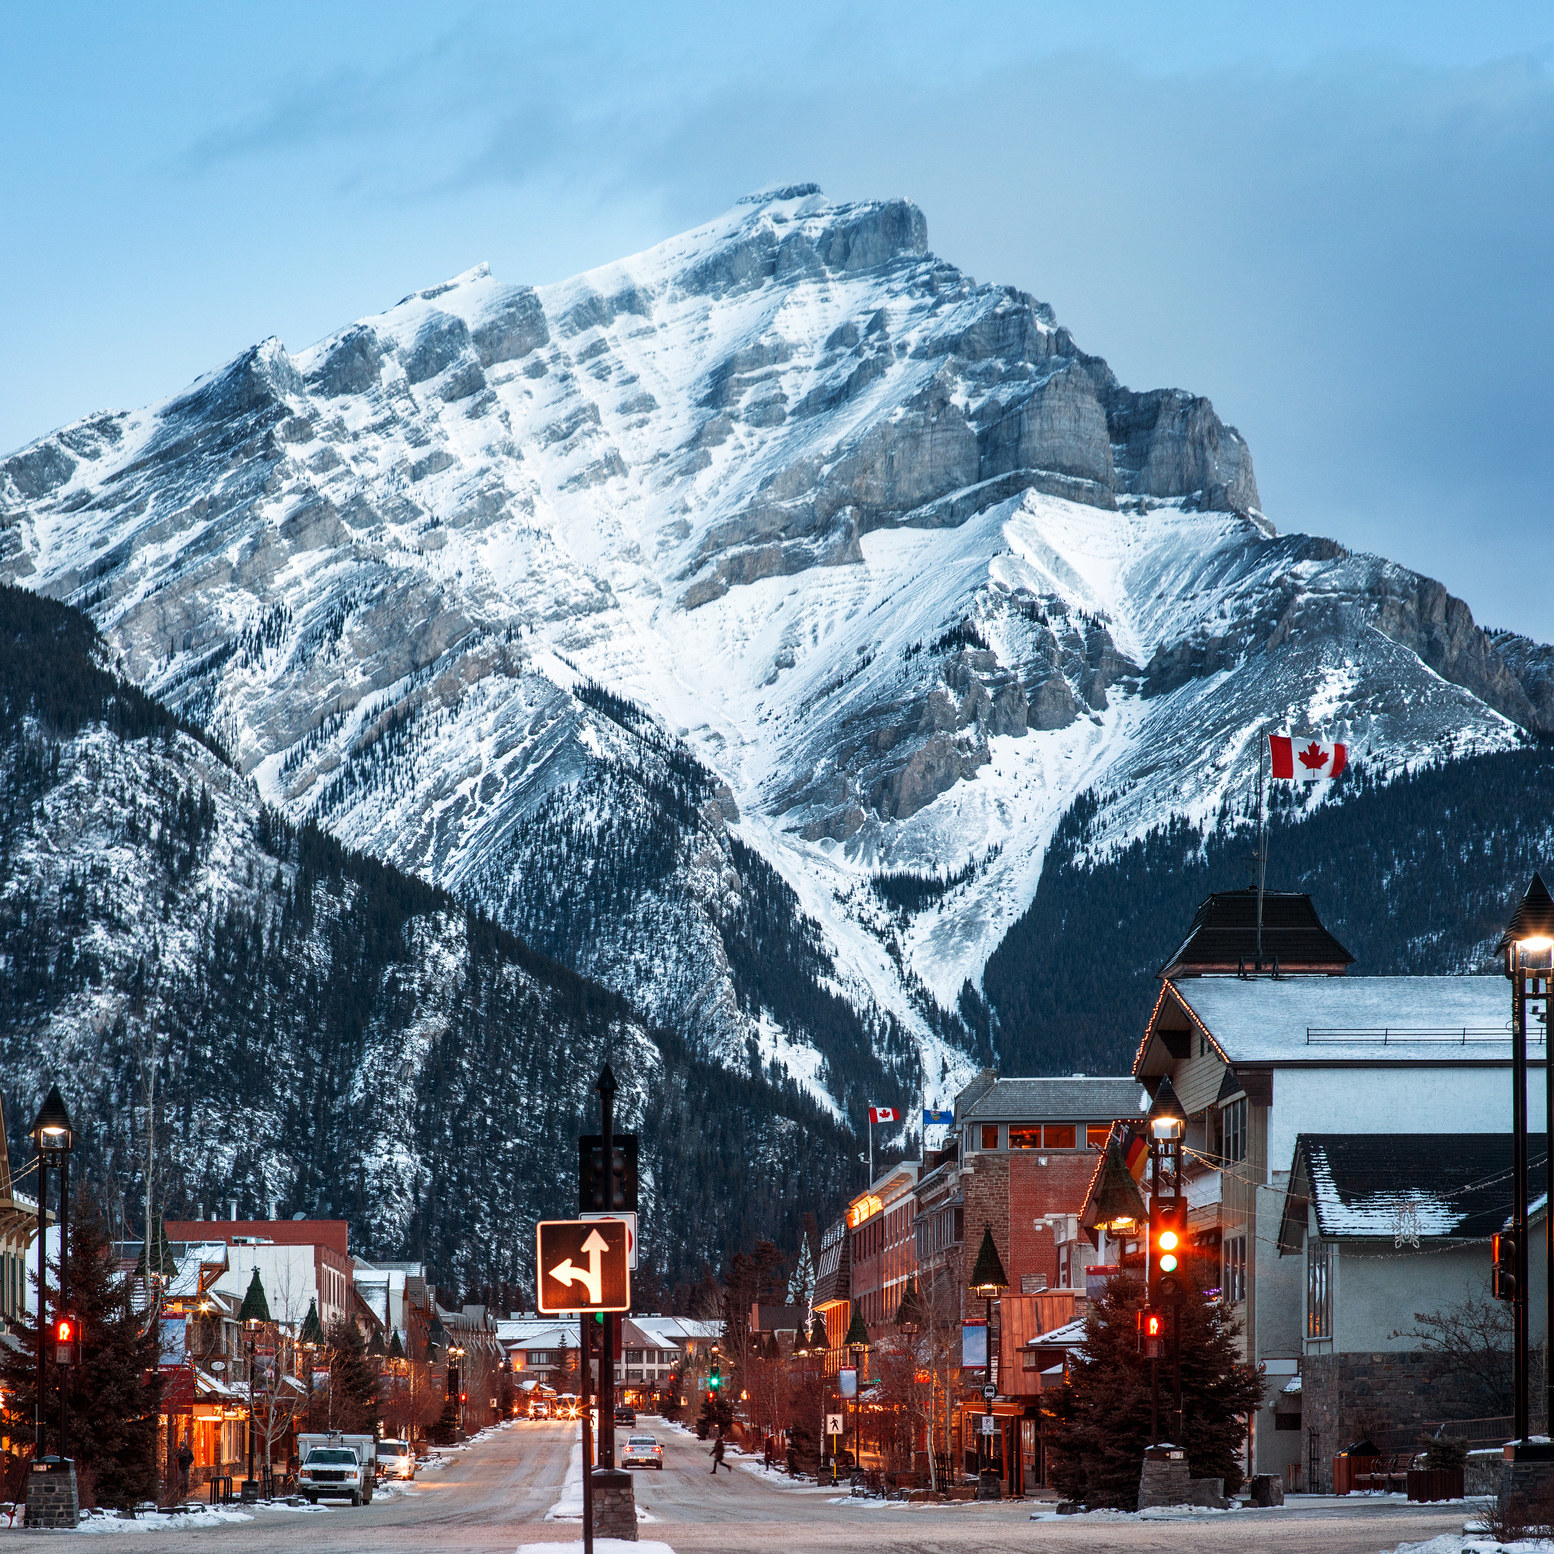 Best Cities for Unique Winter Activities in Canada